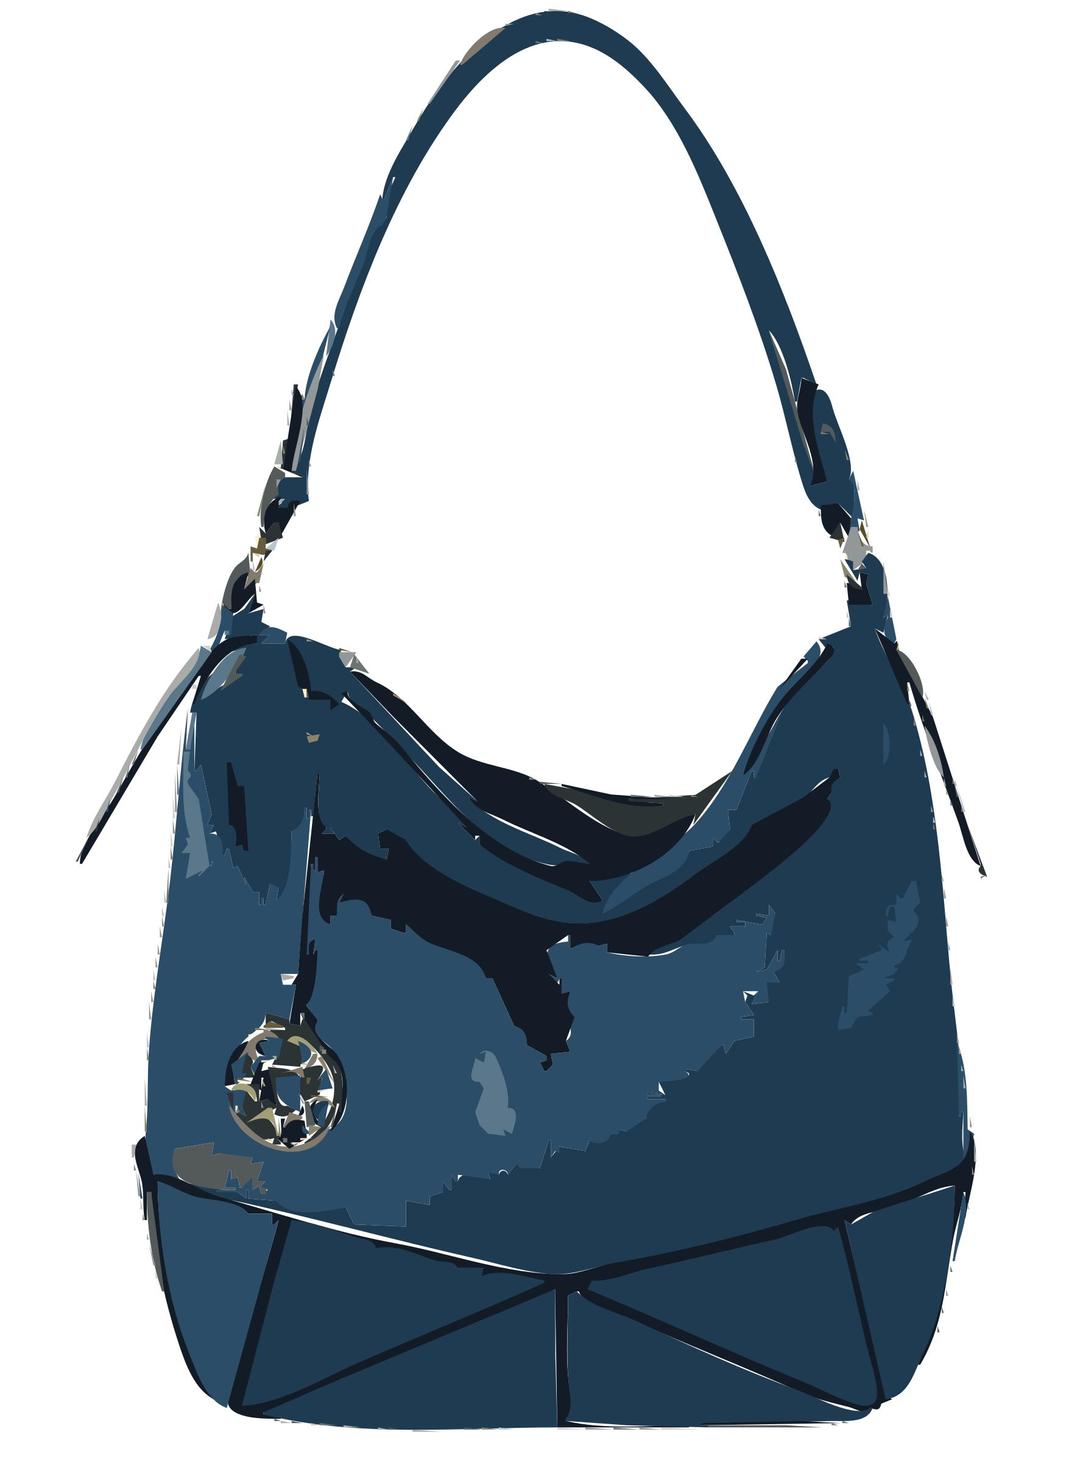 Blue Leather Handbag without logo png transparent